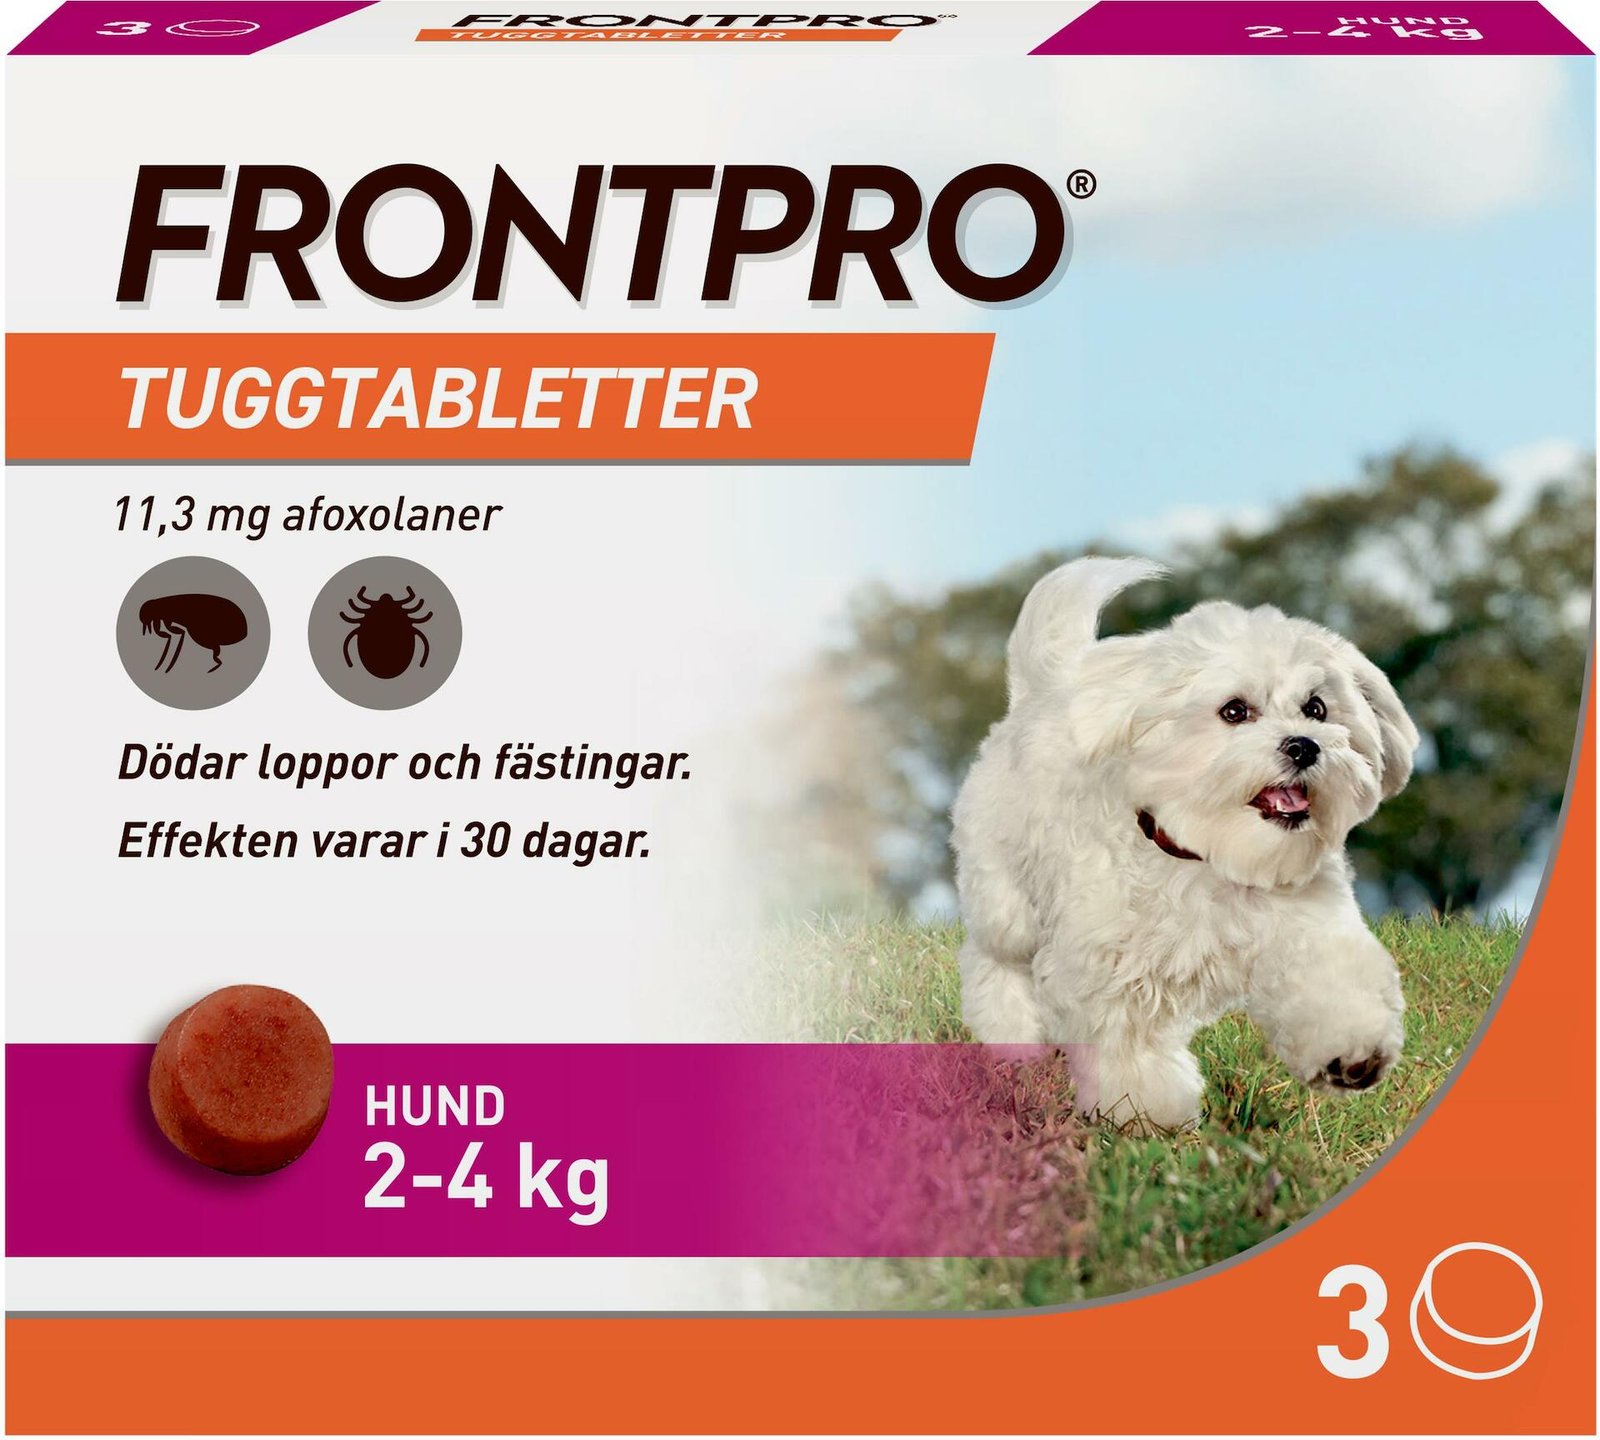 FRONTPRO Hund S 2-4 kg 113 mg afoxolaner 3 tuggtabletter